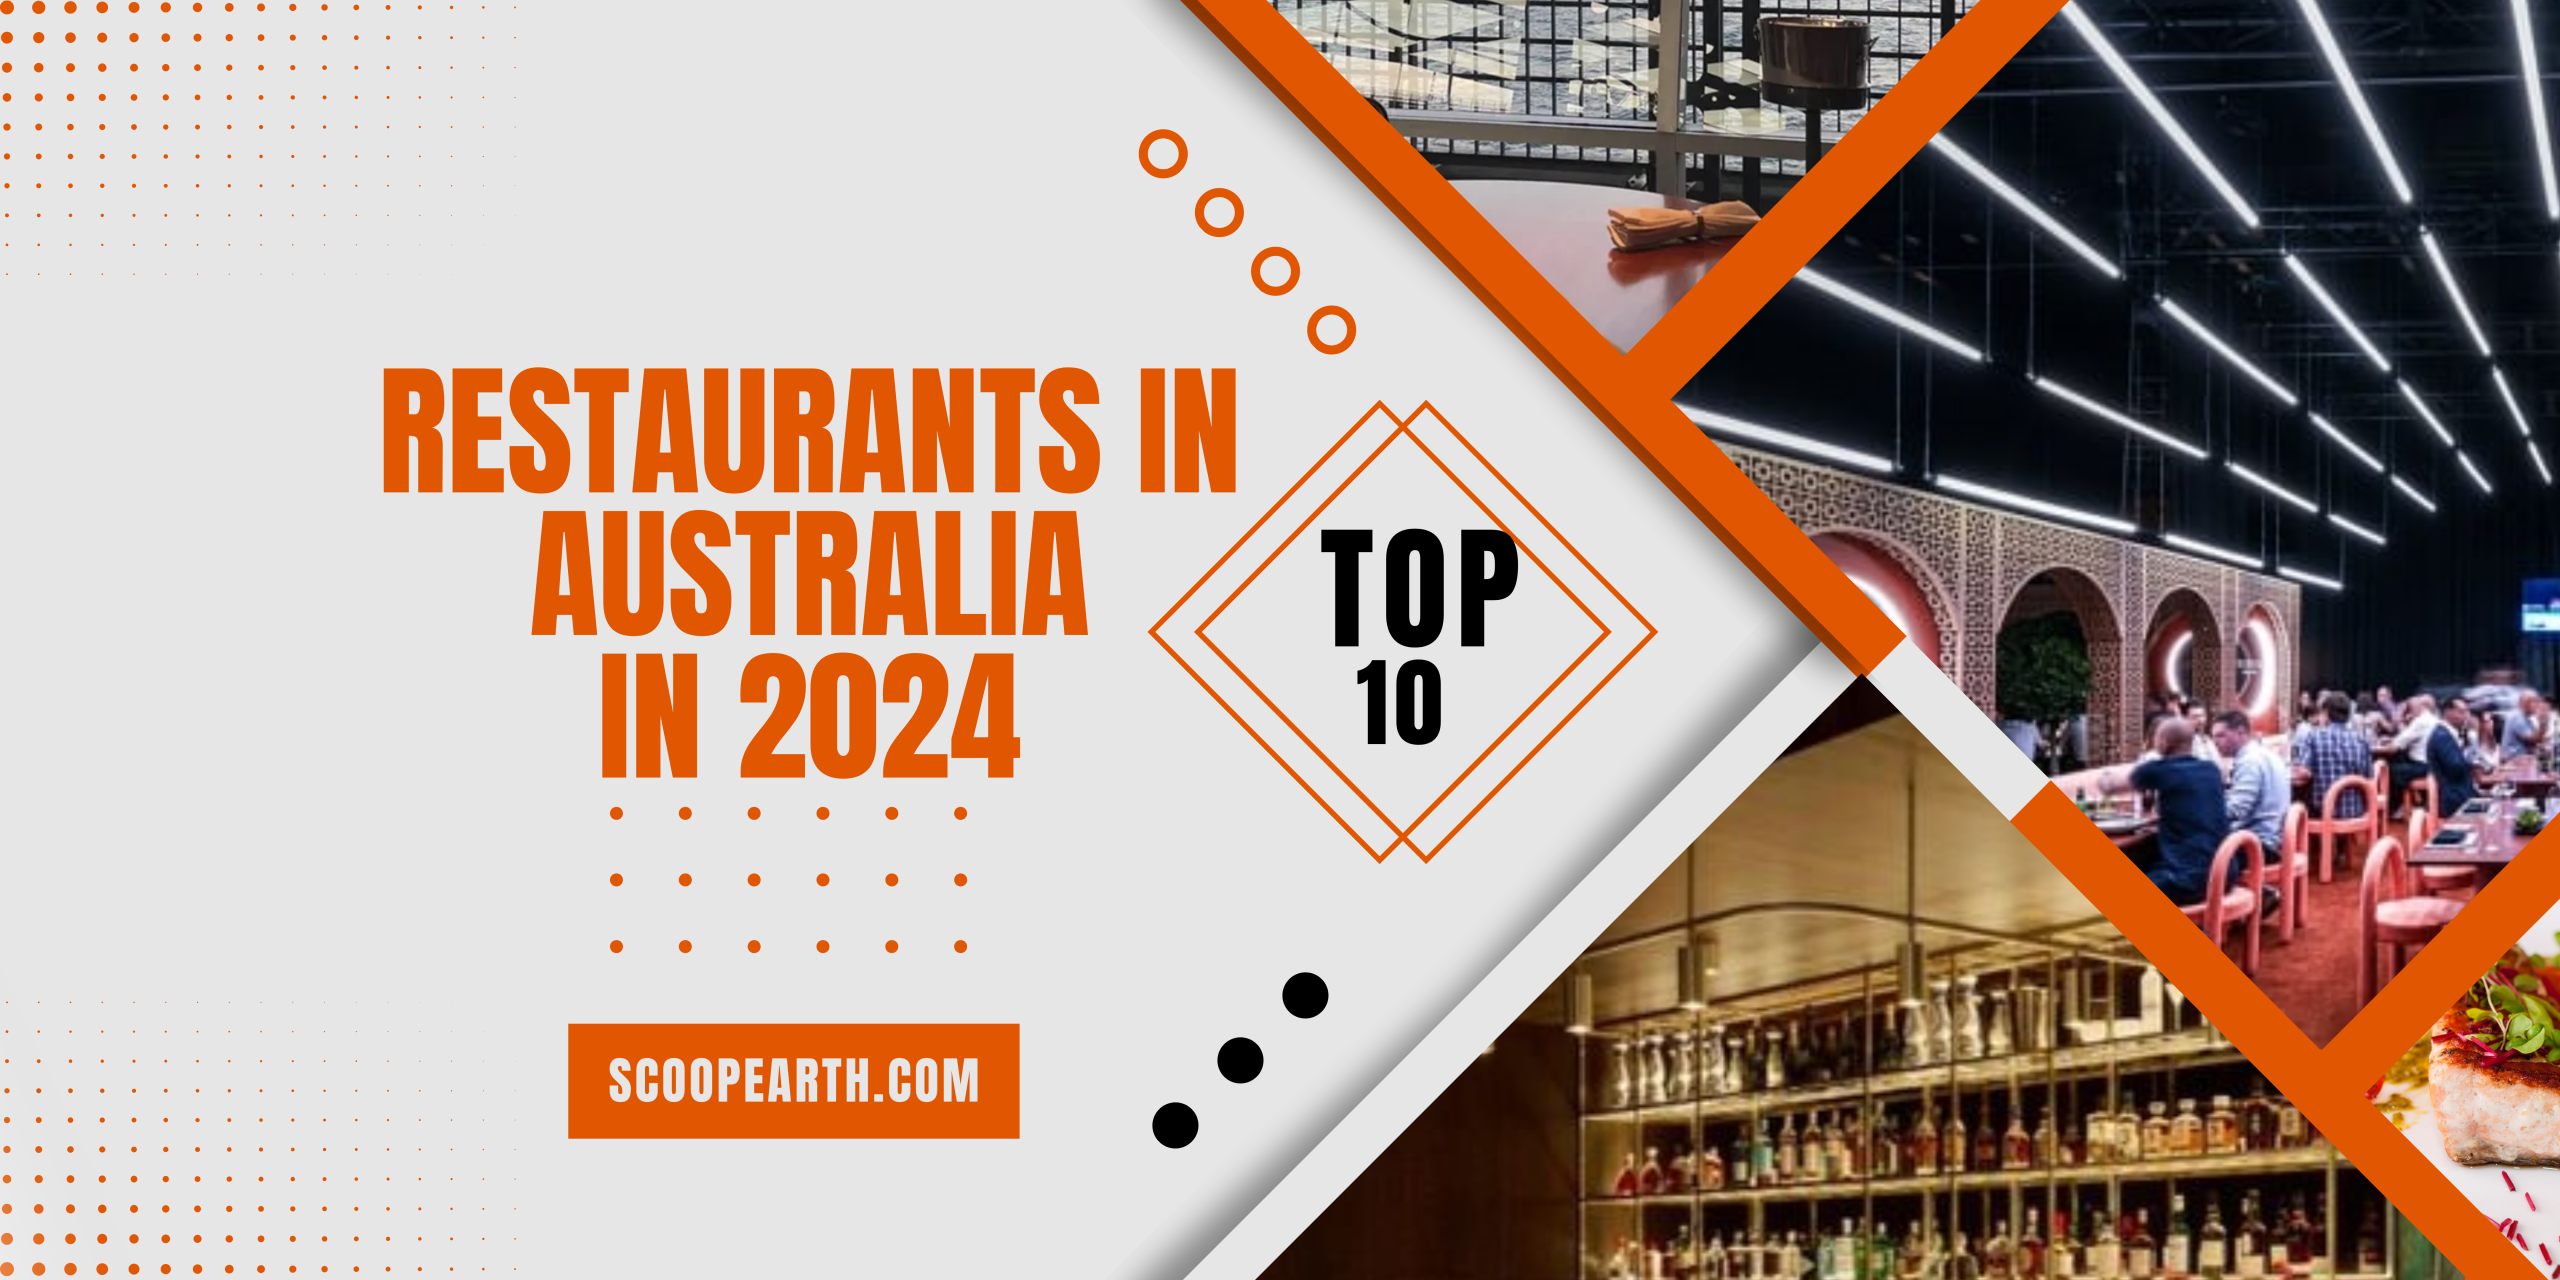 Top 10 Restaurants in Australia in 2024